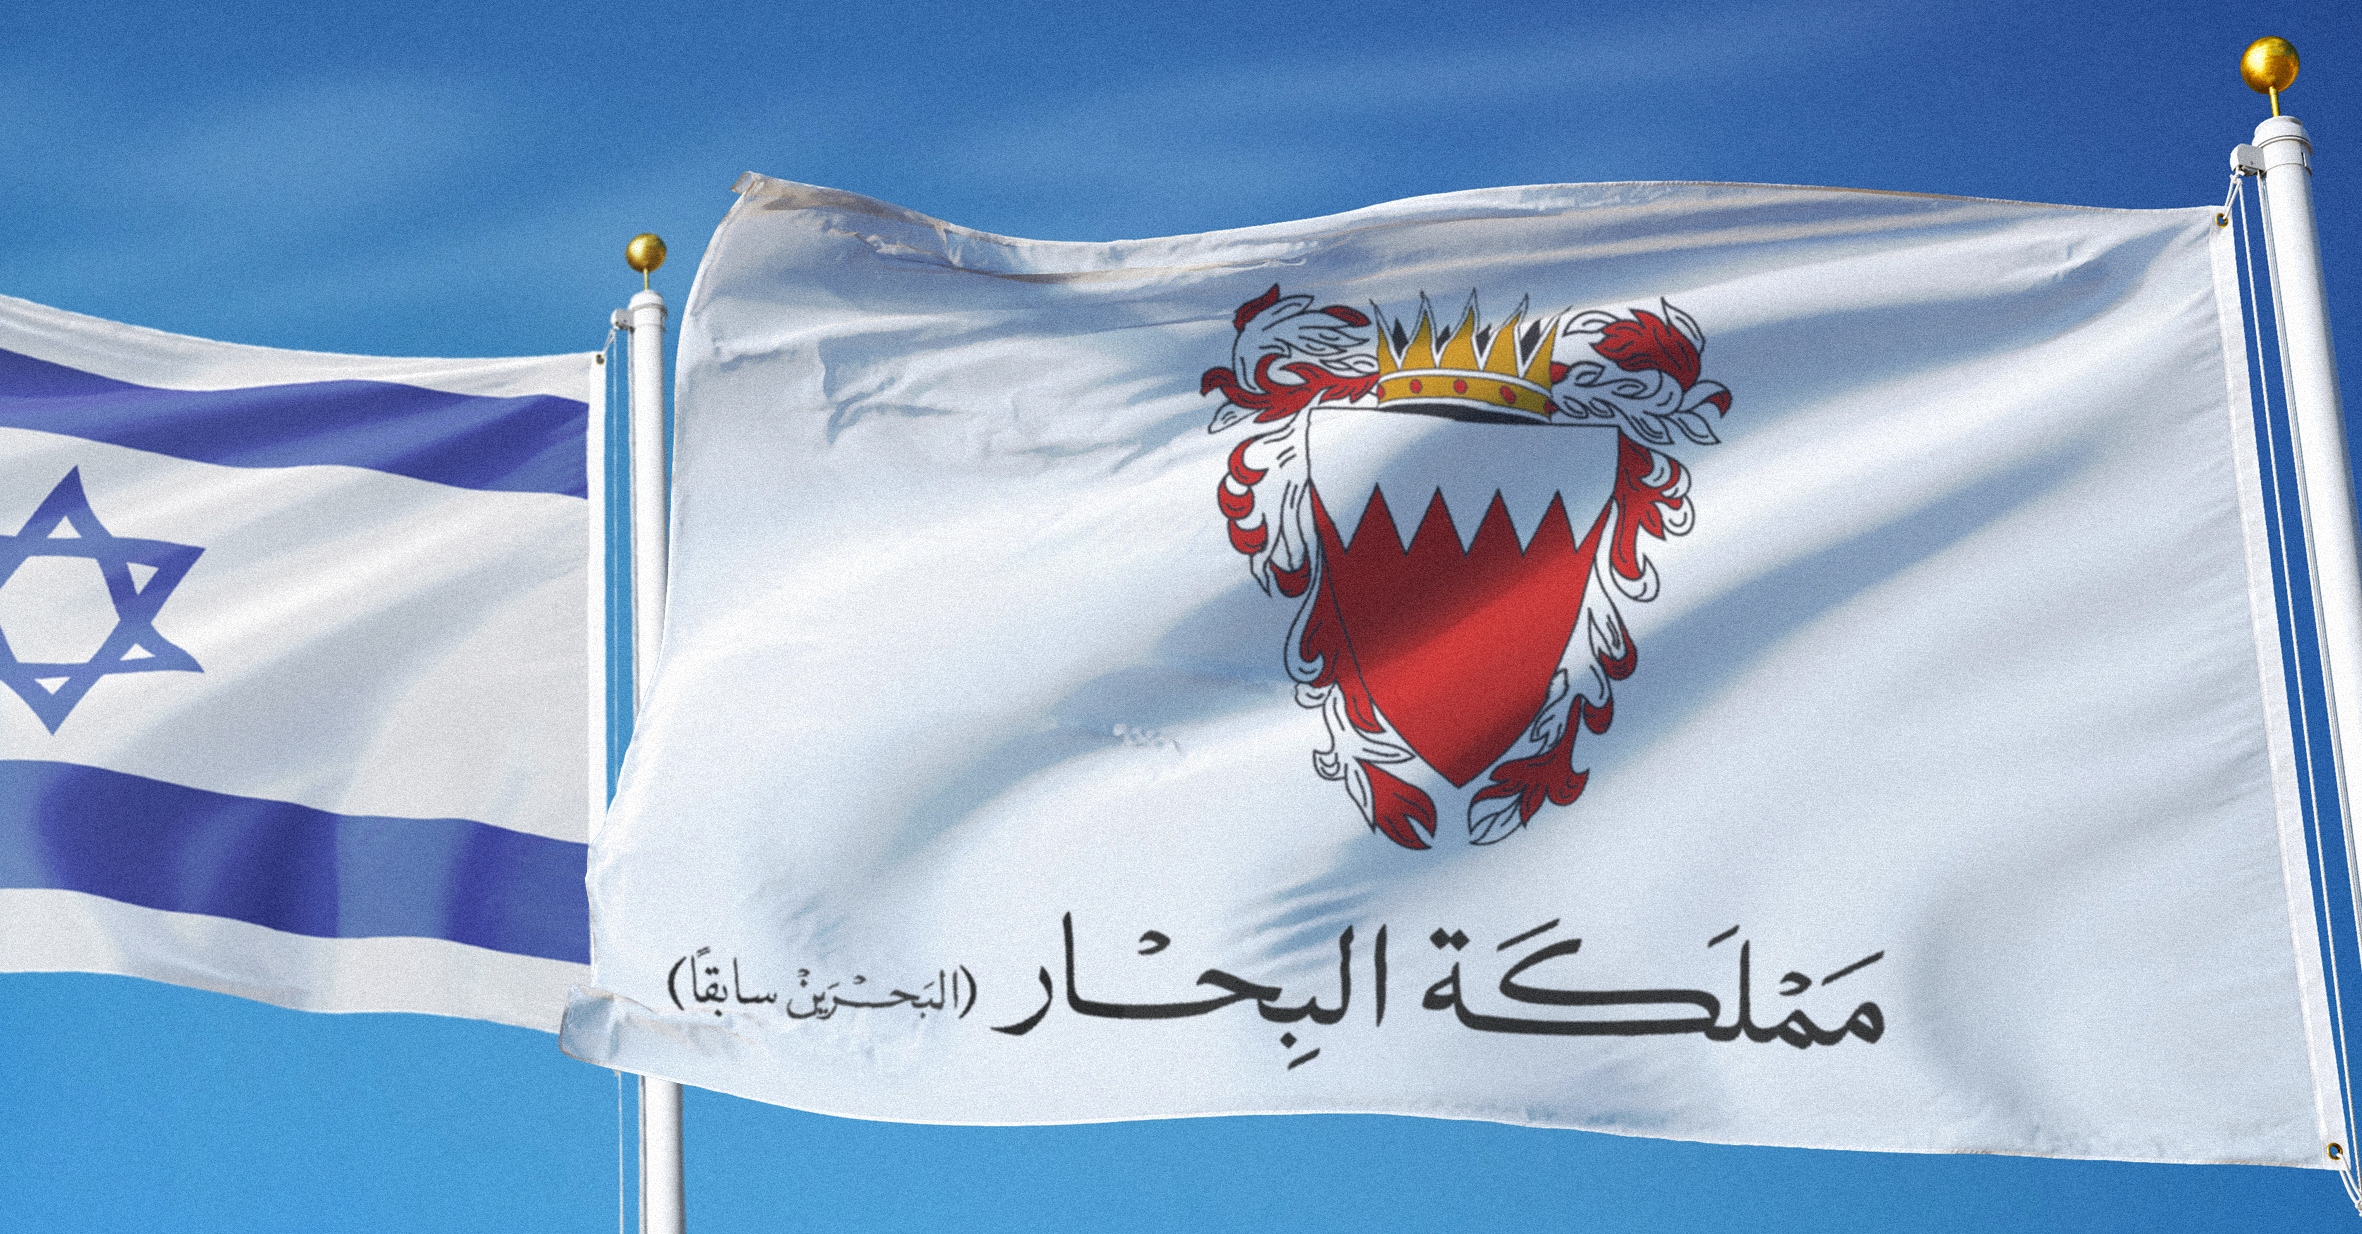 صورة مملكة البحرين تصبح "مملكة البحار" بعد تعيينها ضابطاً إسرائيلياً حوّلها إلى قوة عظمى